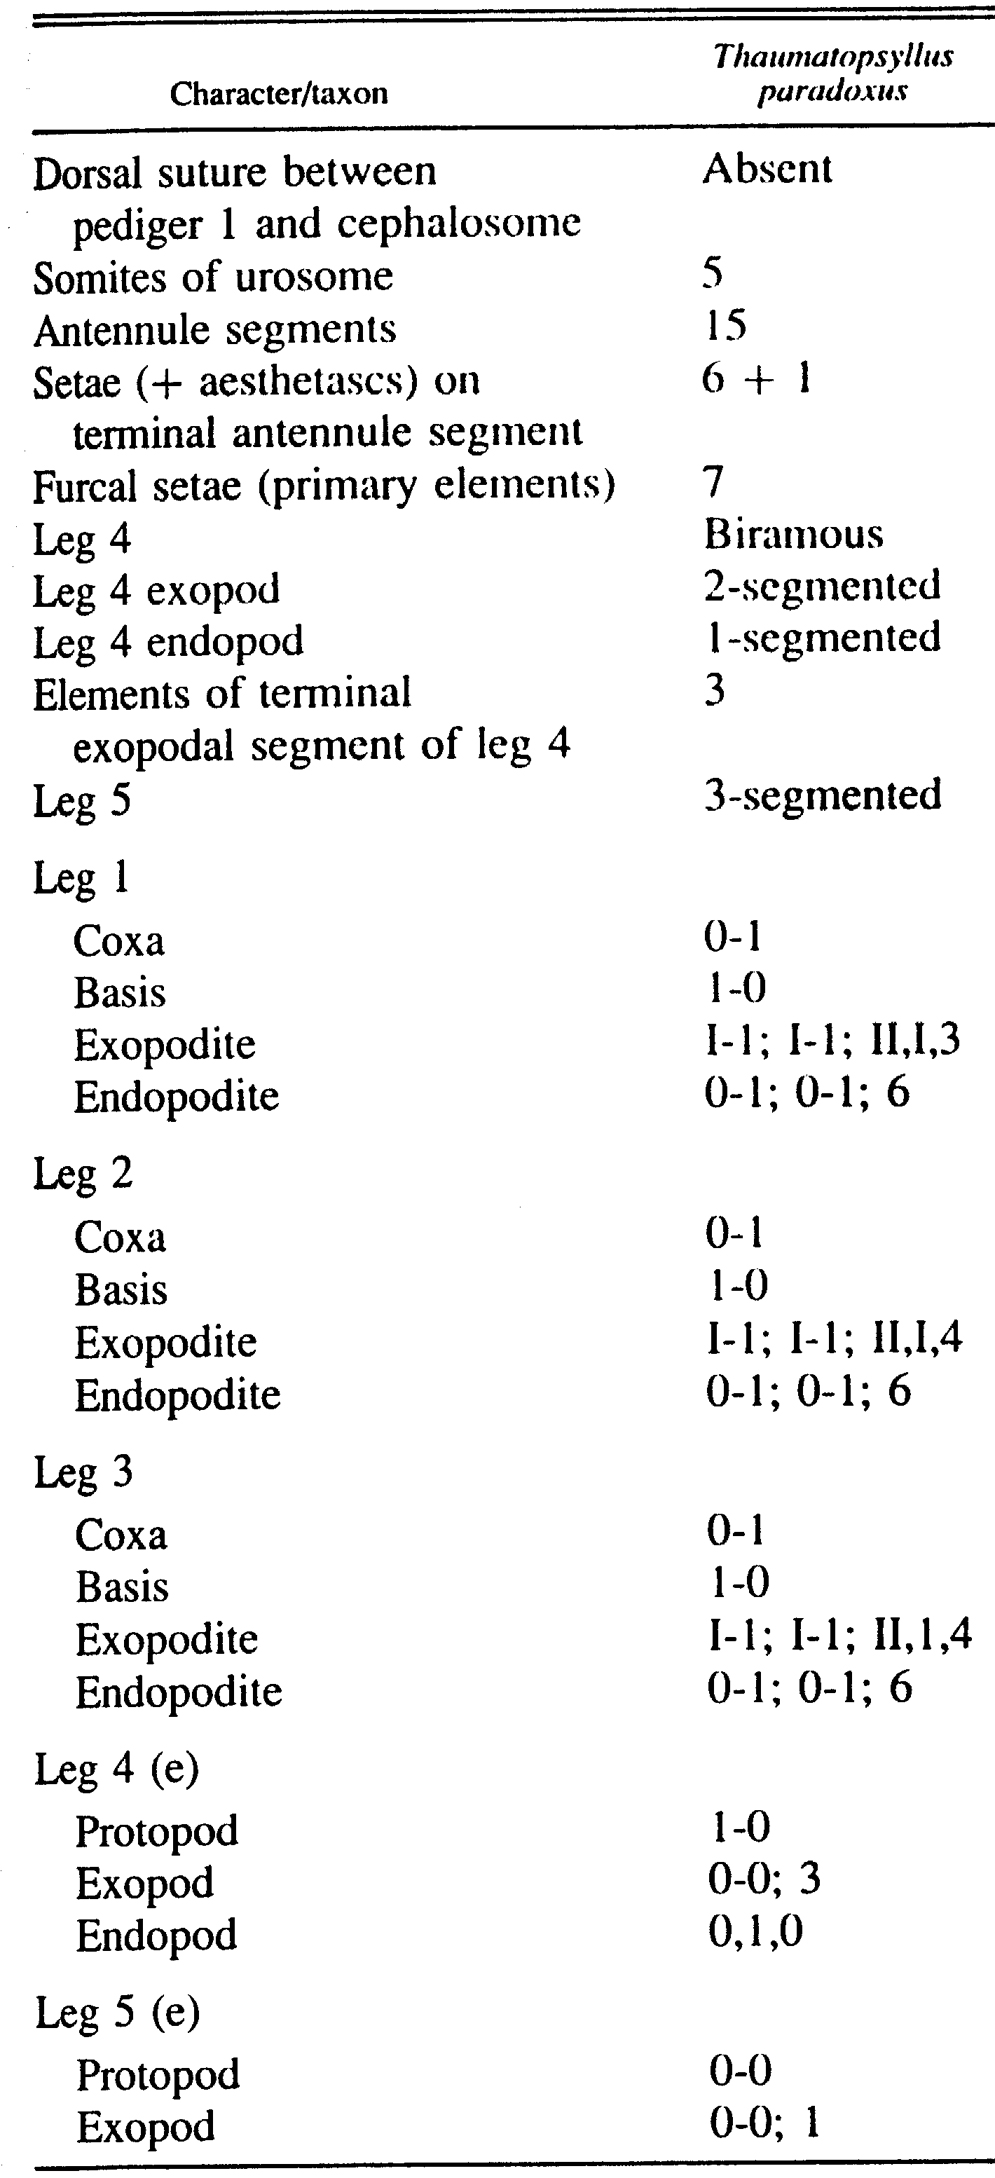 Espce Thaumatopsyllus paradoxus - Planche 2 de figures morphologiques